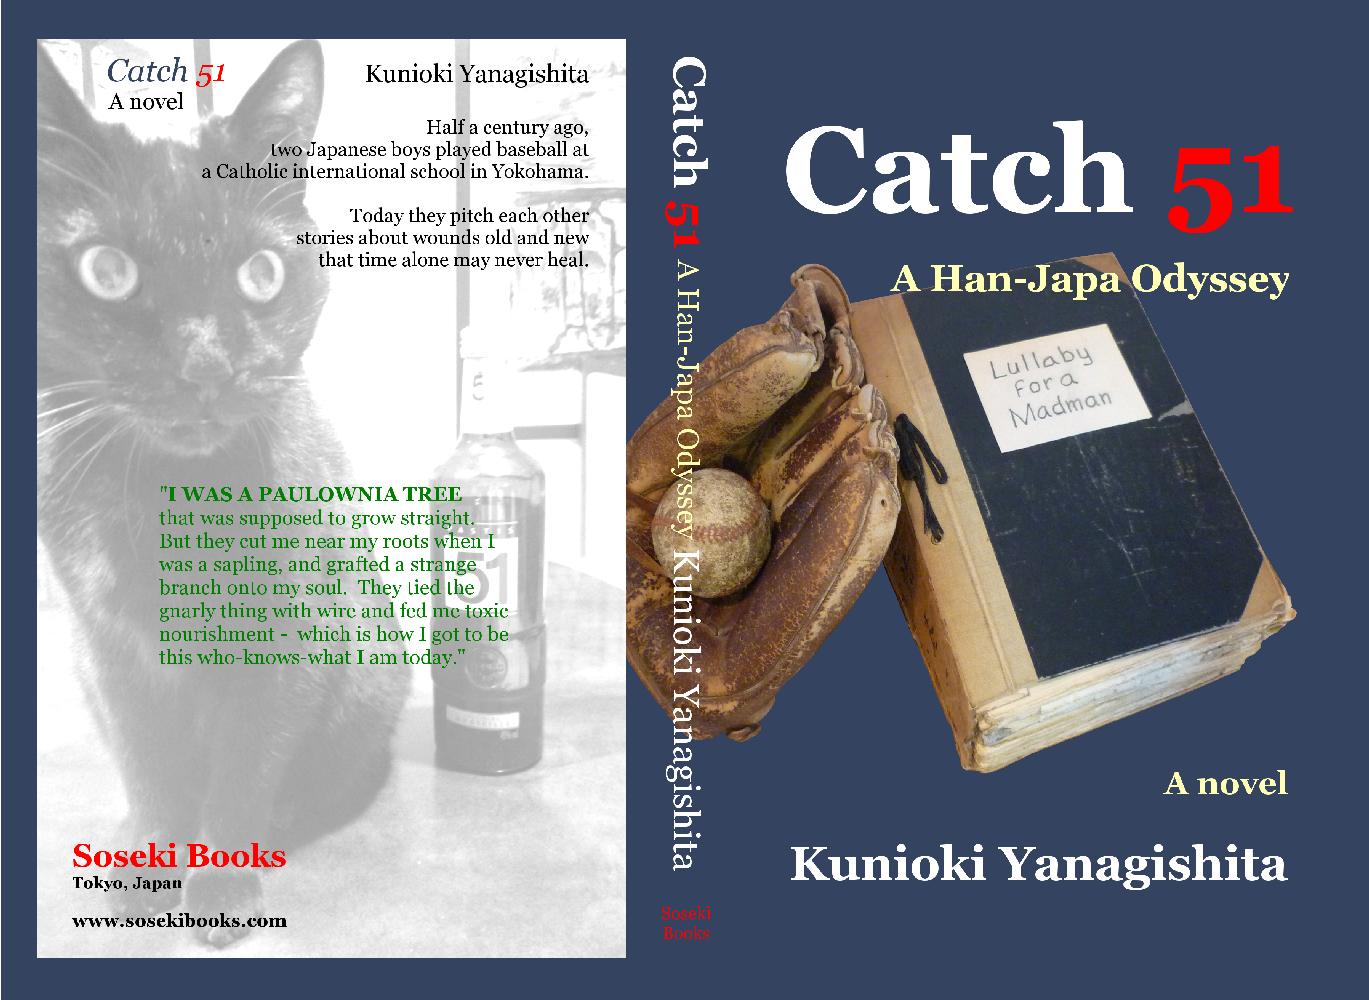 Catch 51